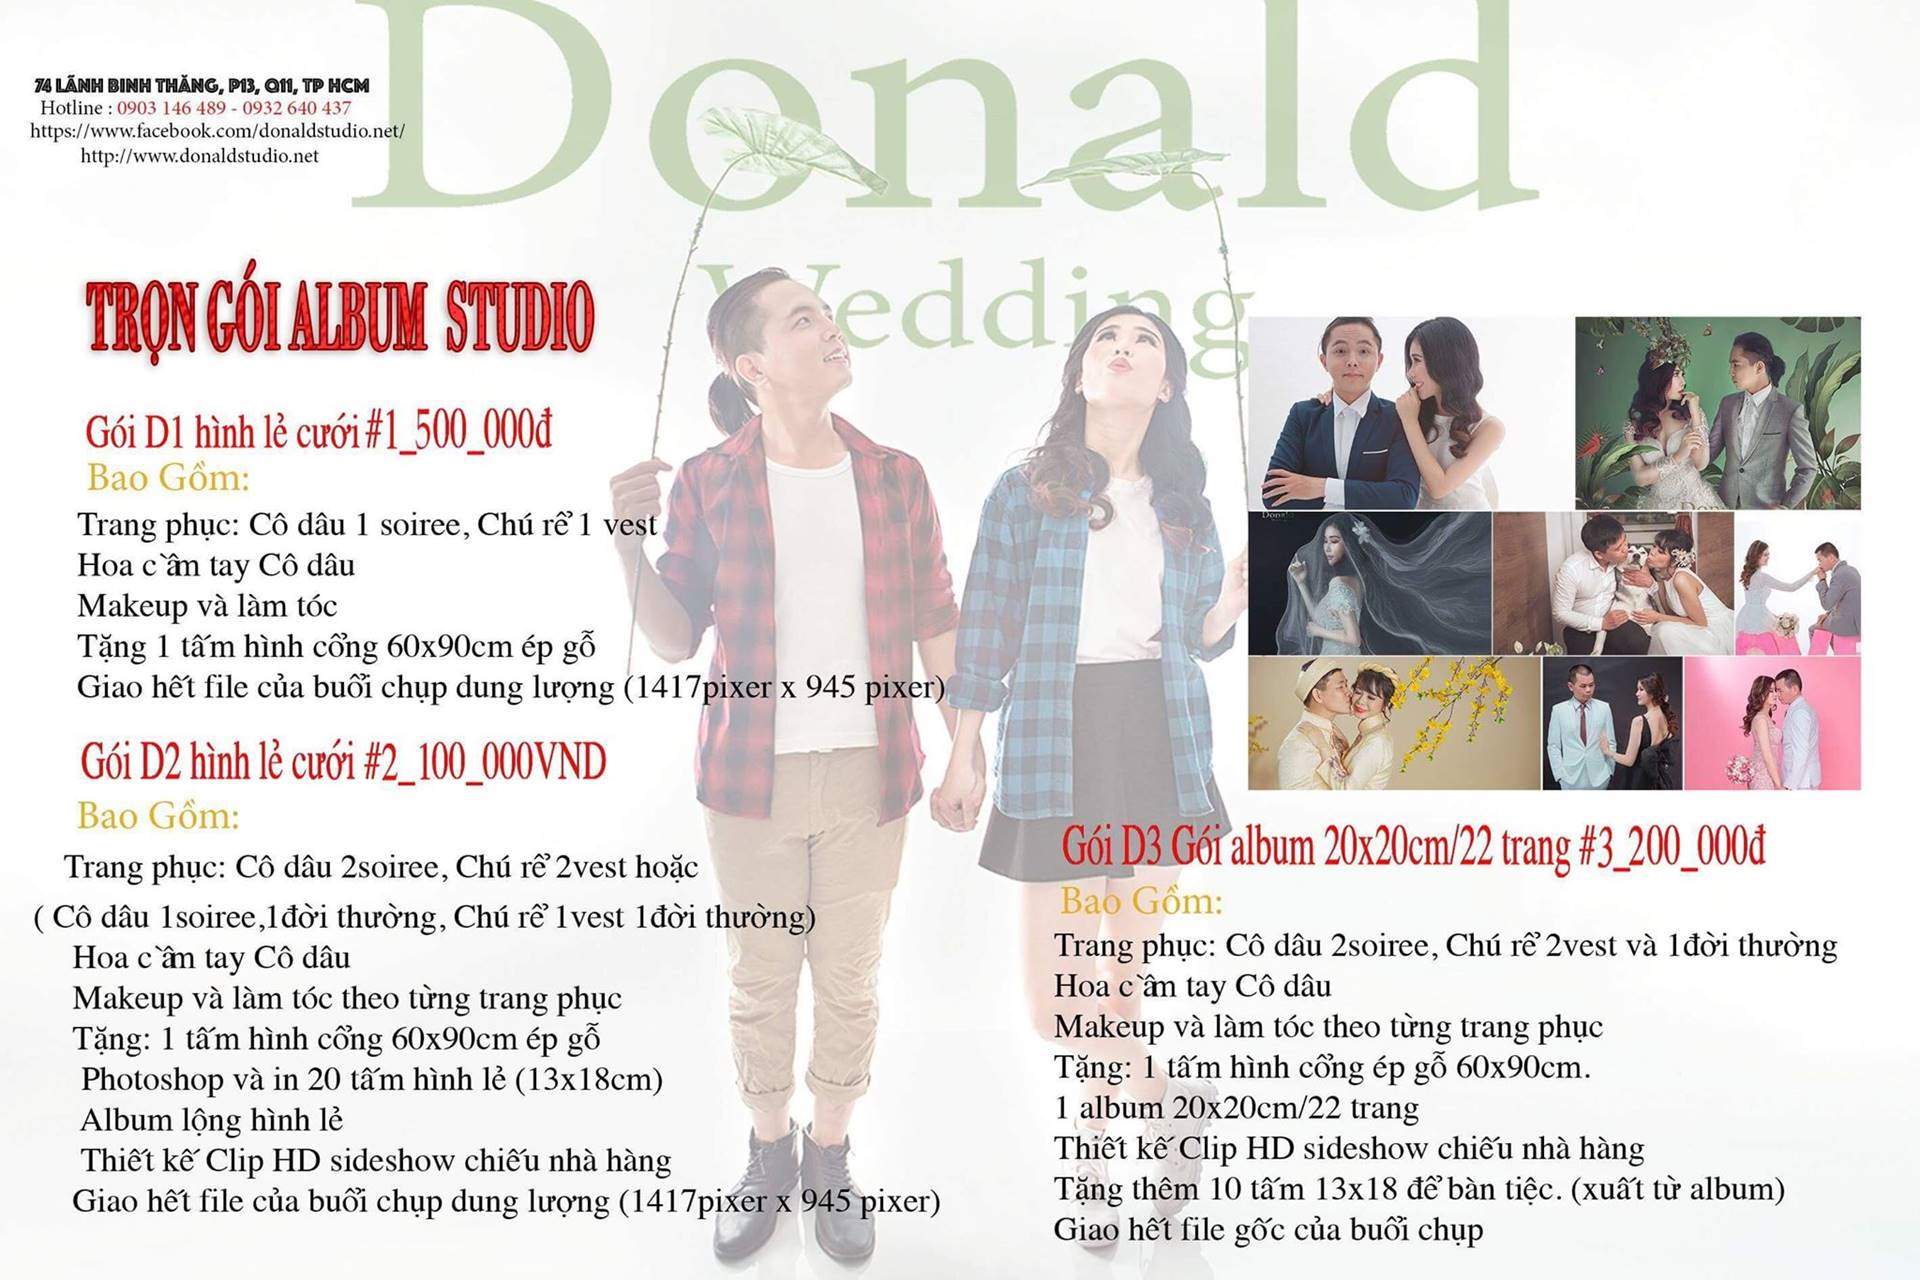 Bảng giá dịch vụ của Donald Studio (ảnh: internet)